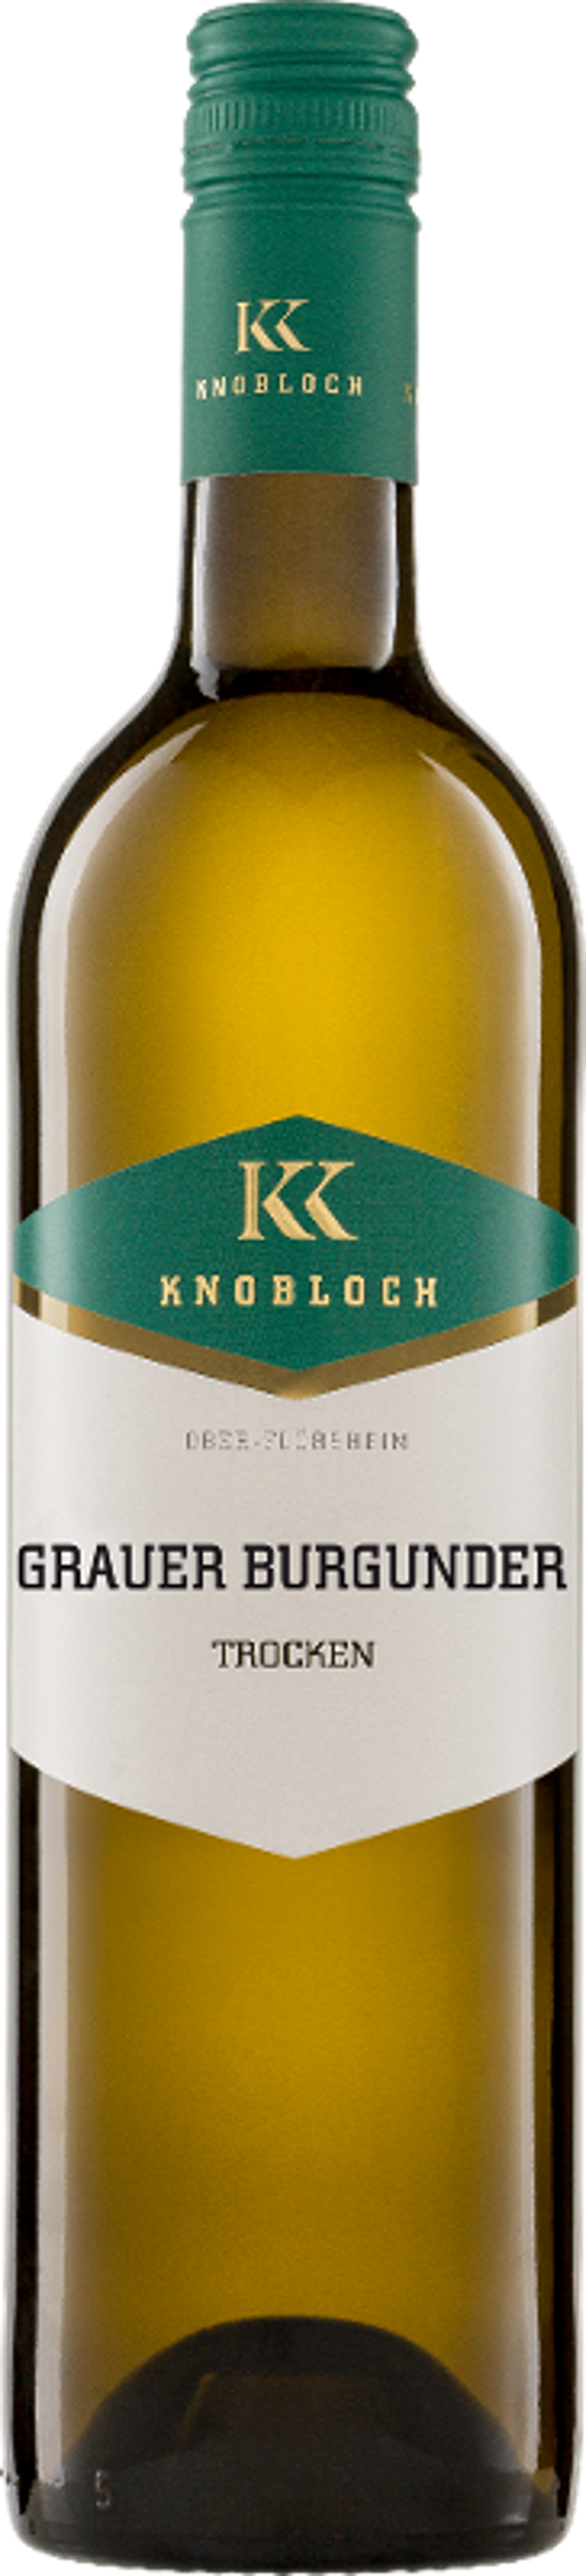 Produktfoto zu Knobloch Grauer Burgunder